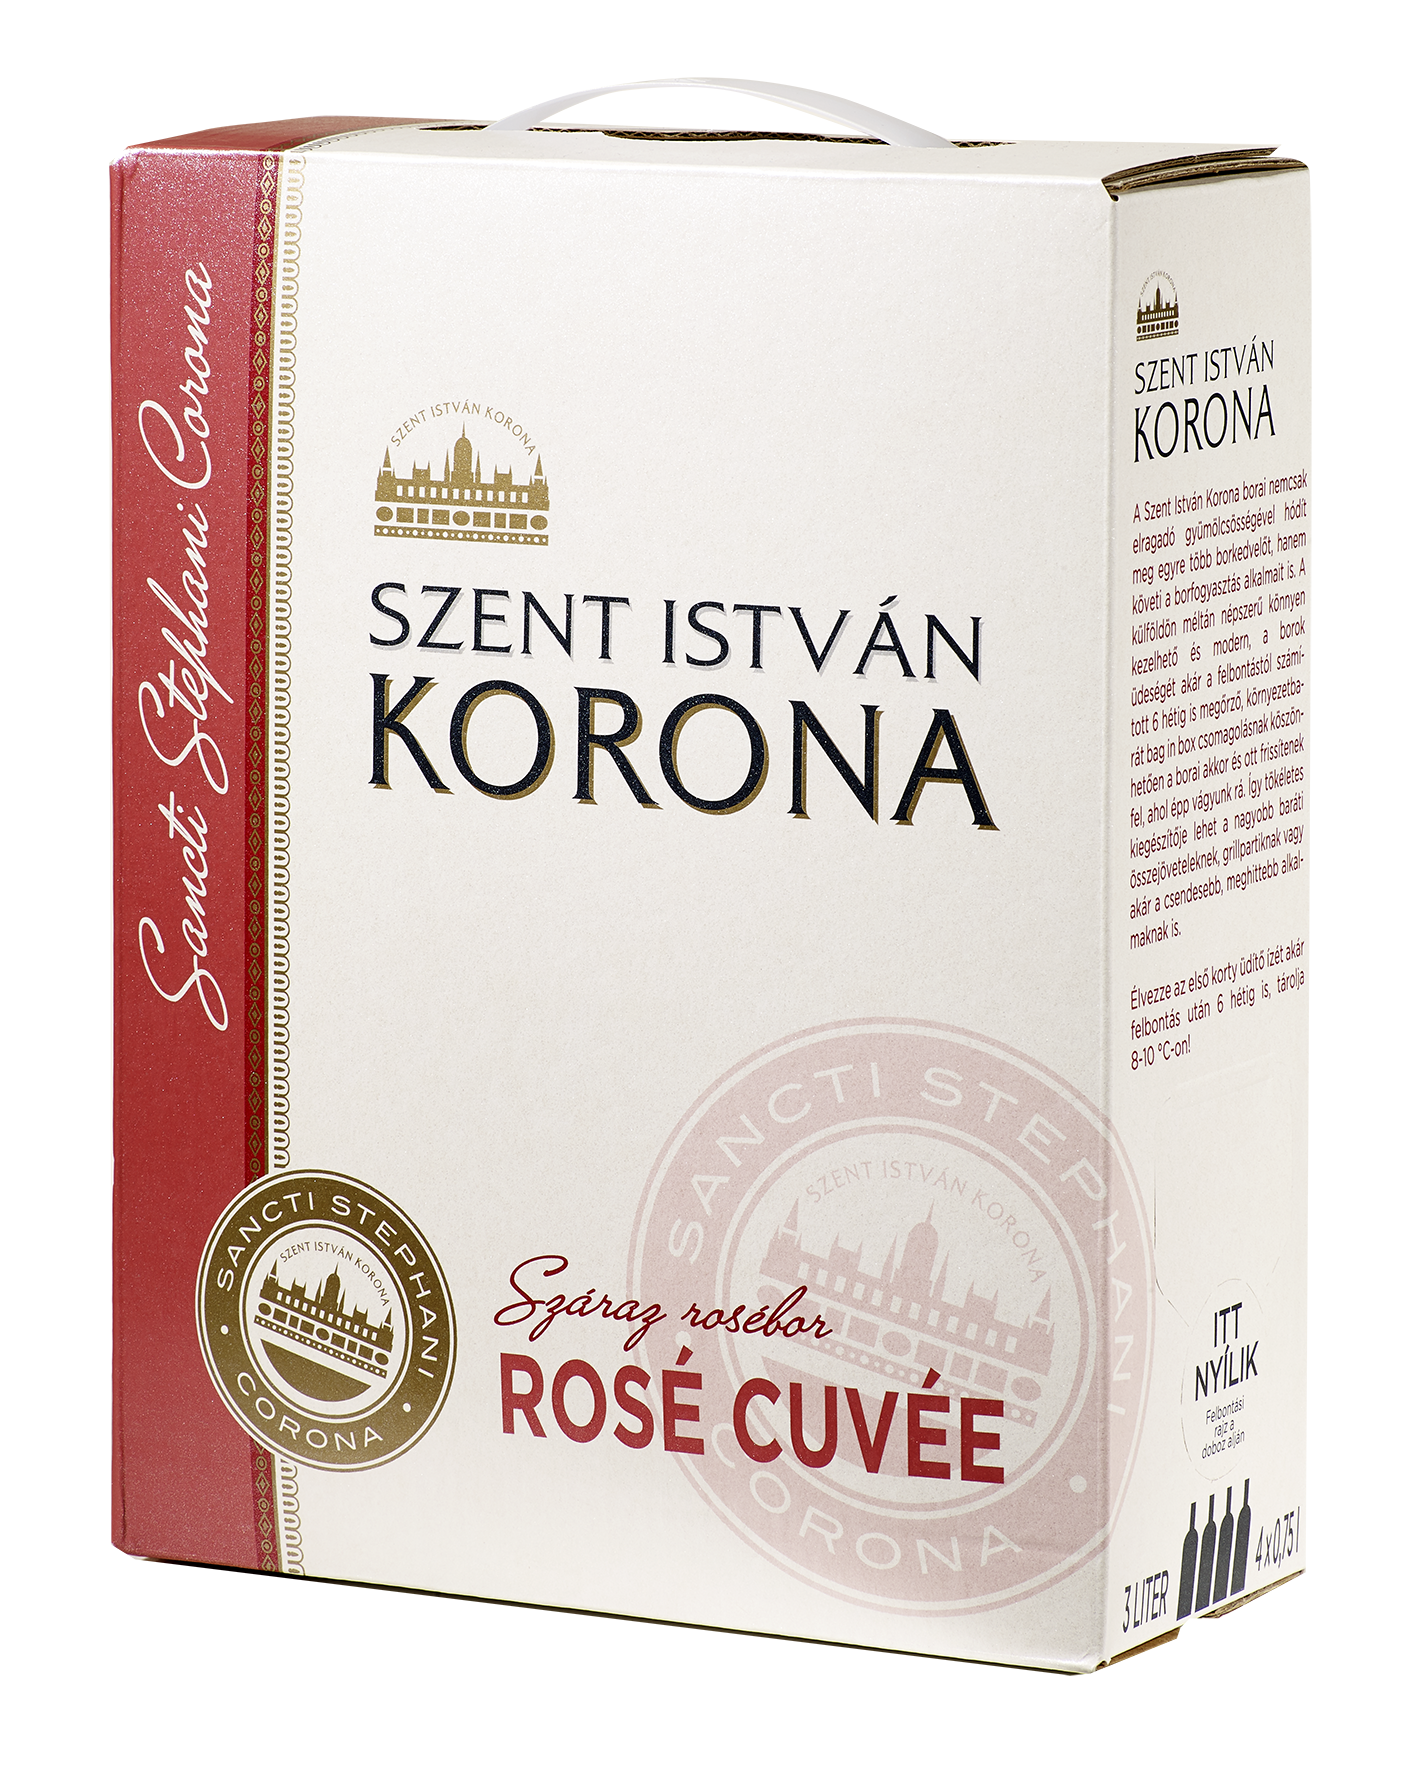 Szent István Korona Rosé 3 literes bag in box